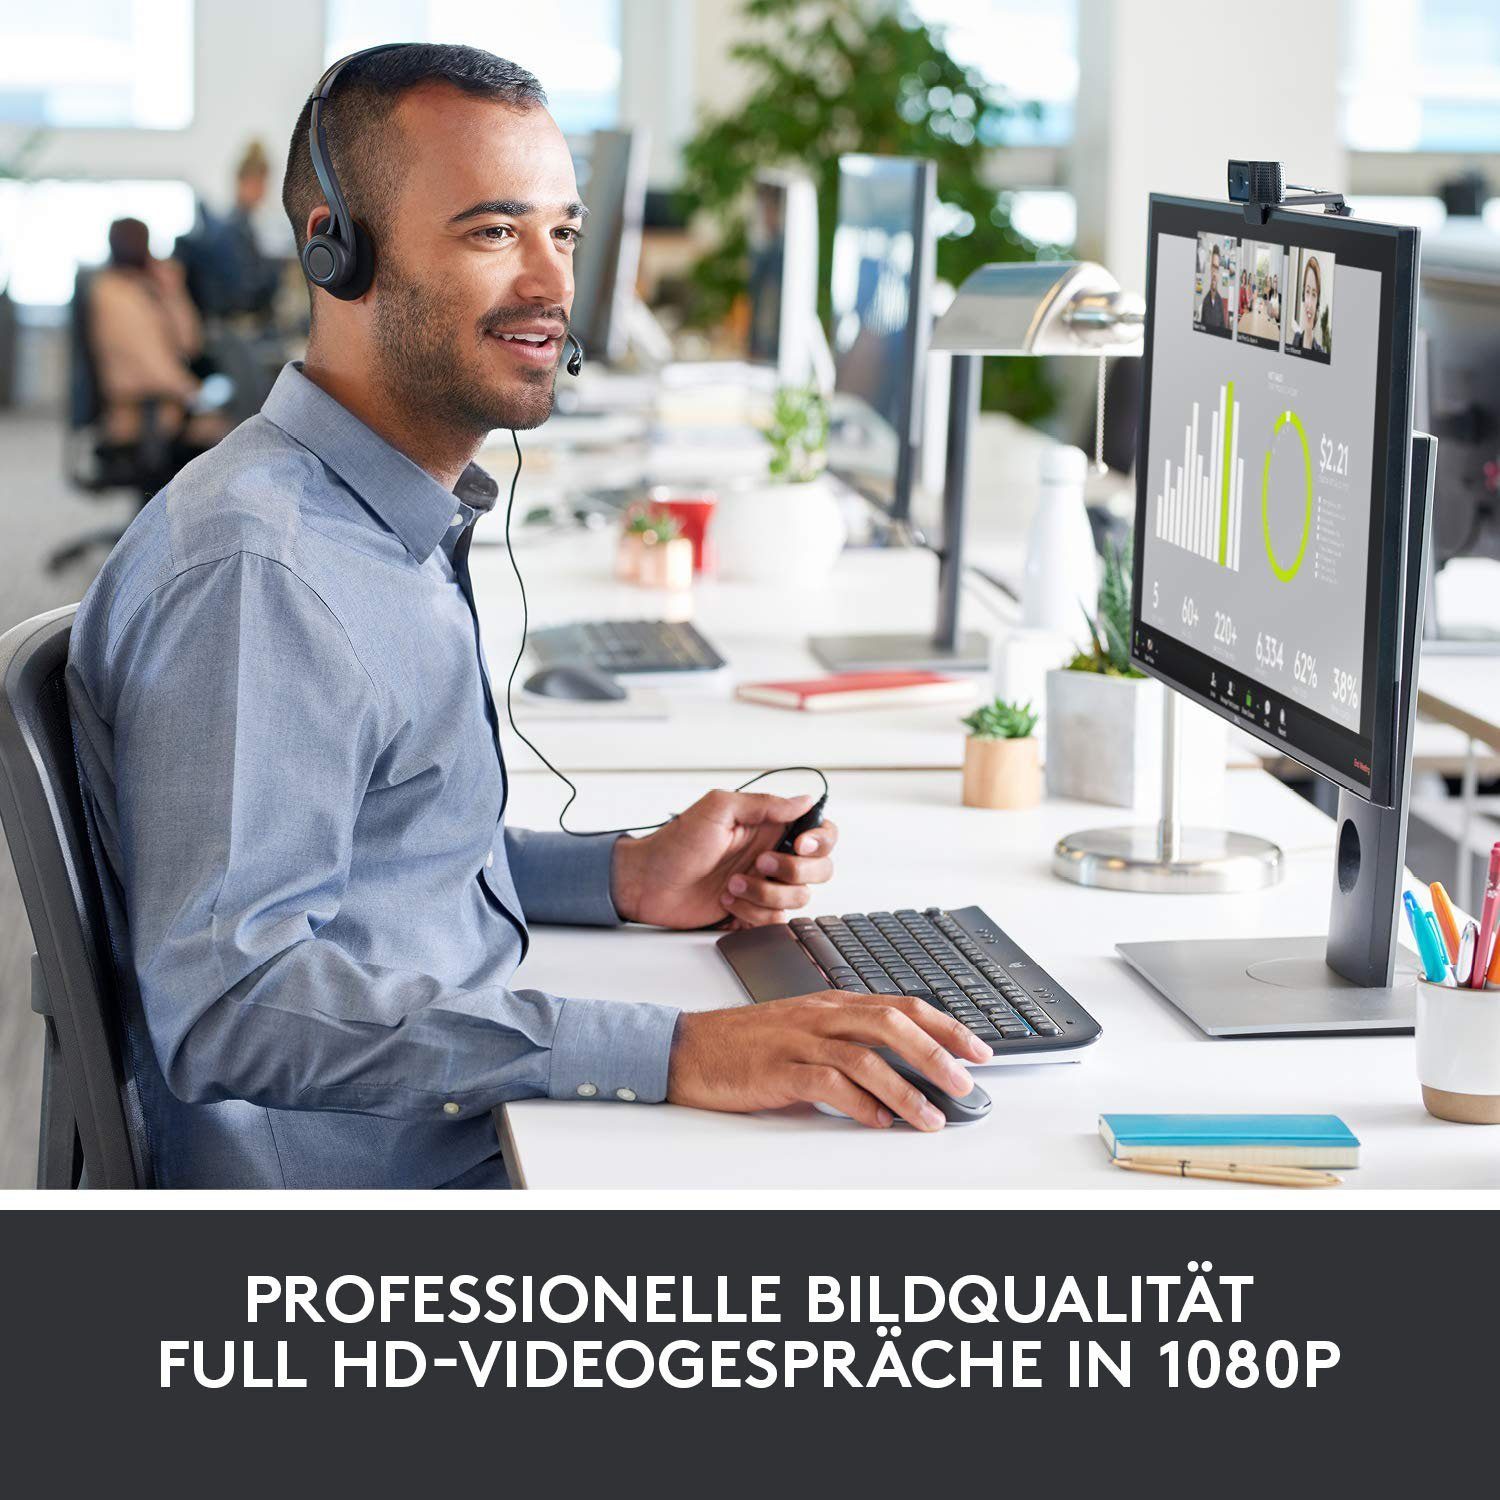 Logitech C920 HD PRO HD) (Full Webcam